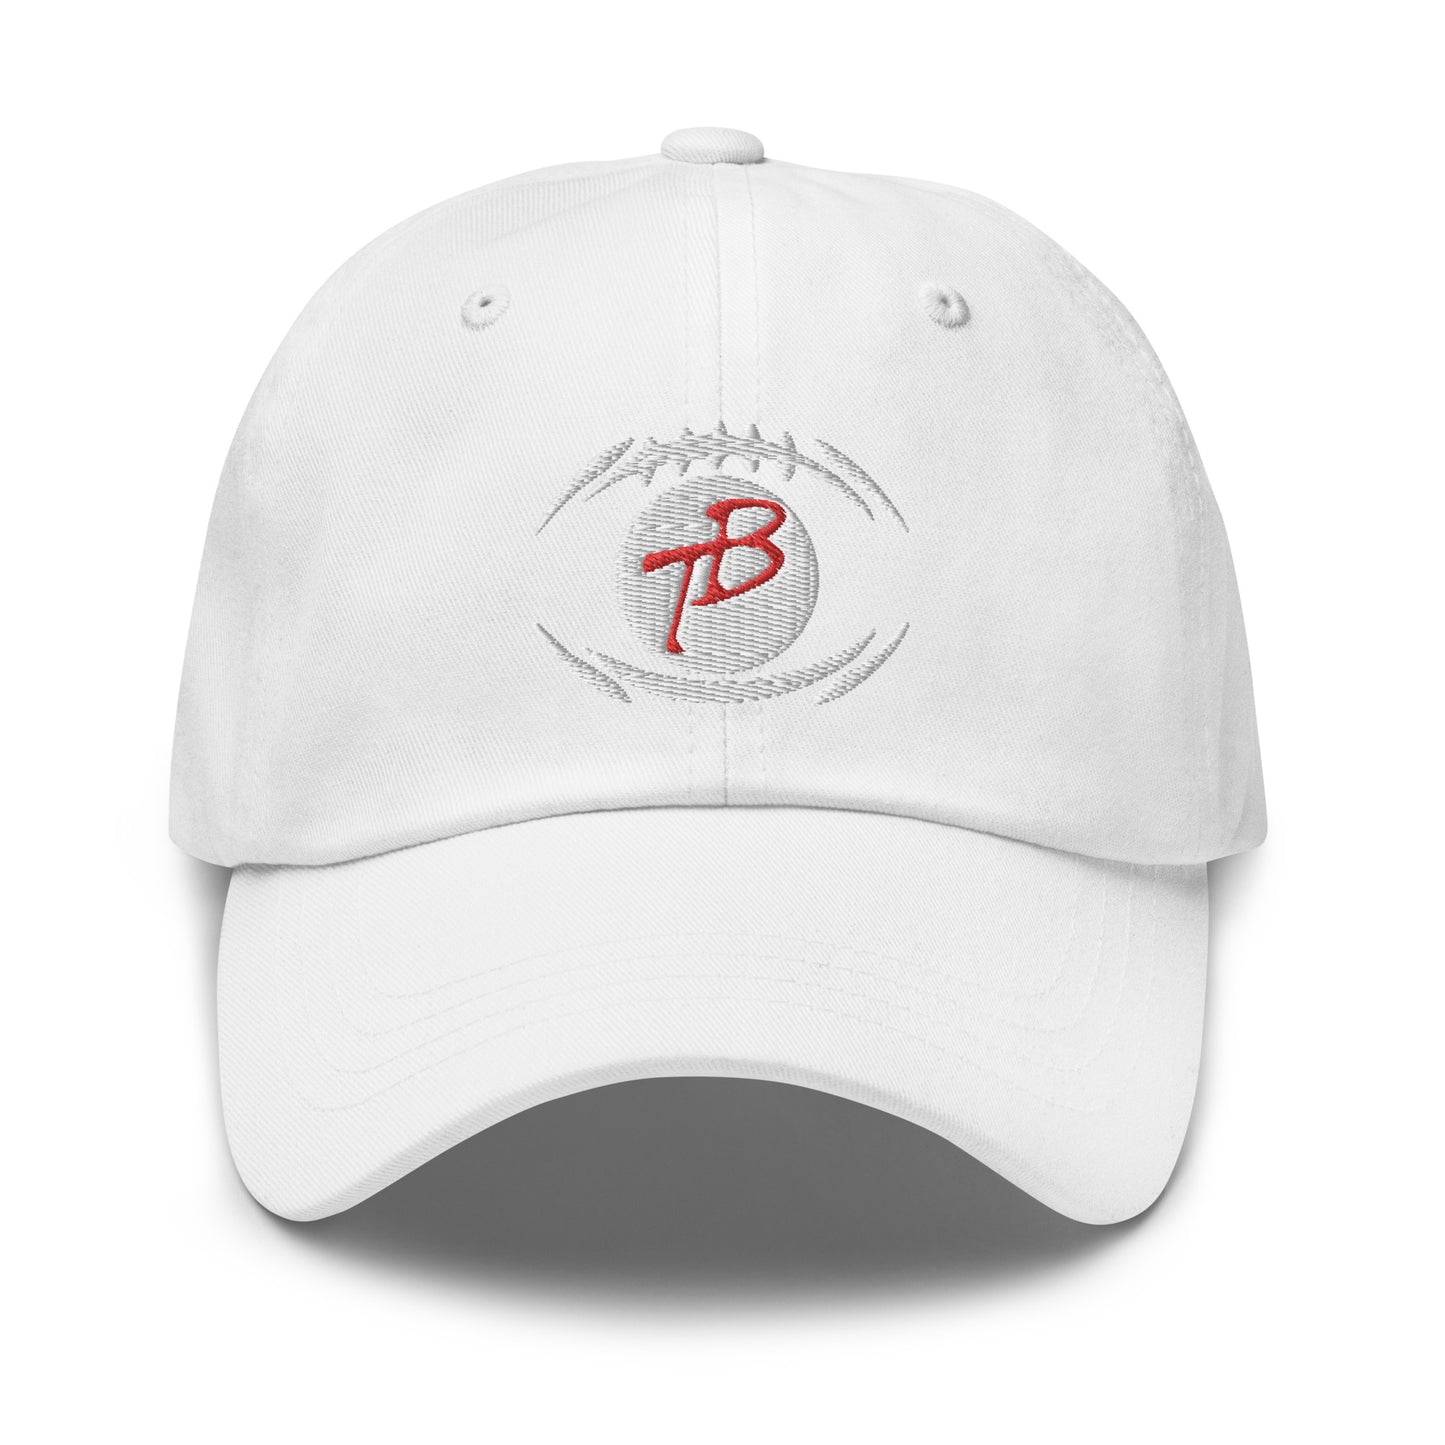 Terry bradshaw hat / Tb12 / Tom Brady Dad hat